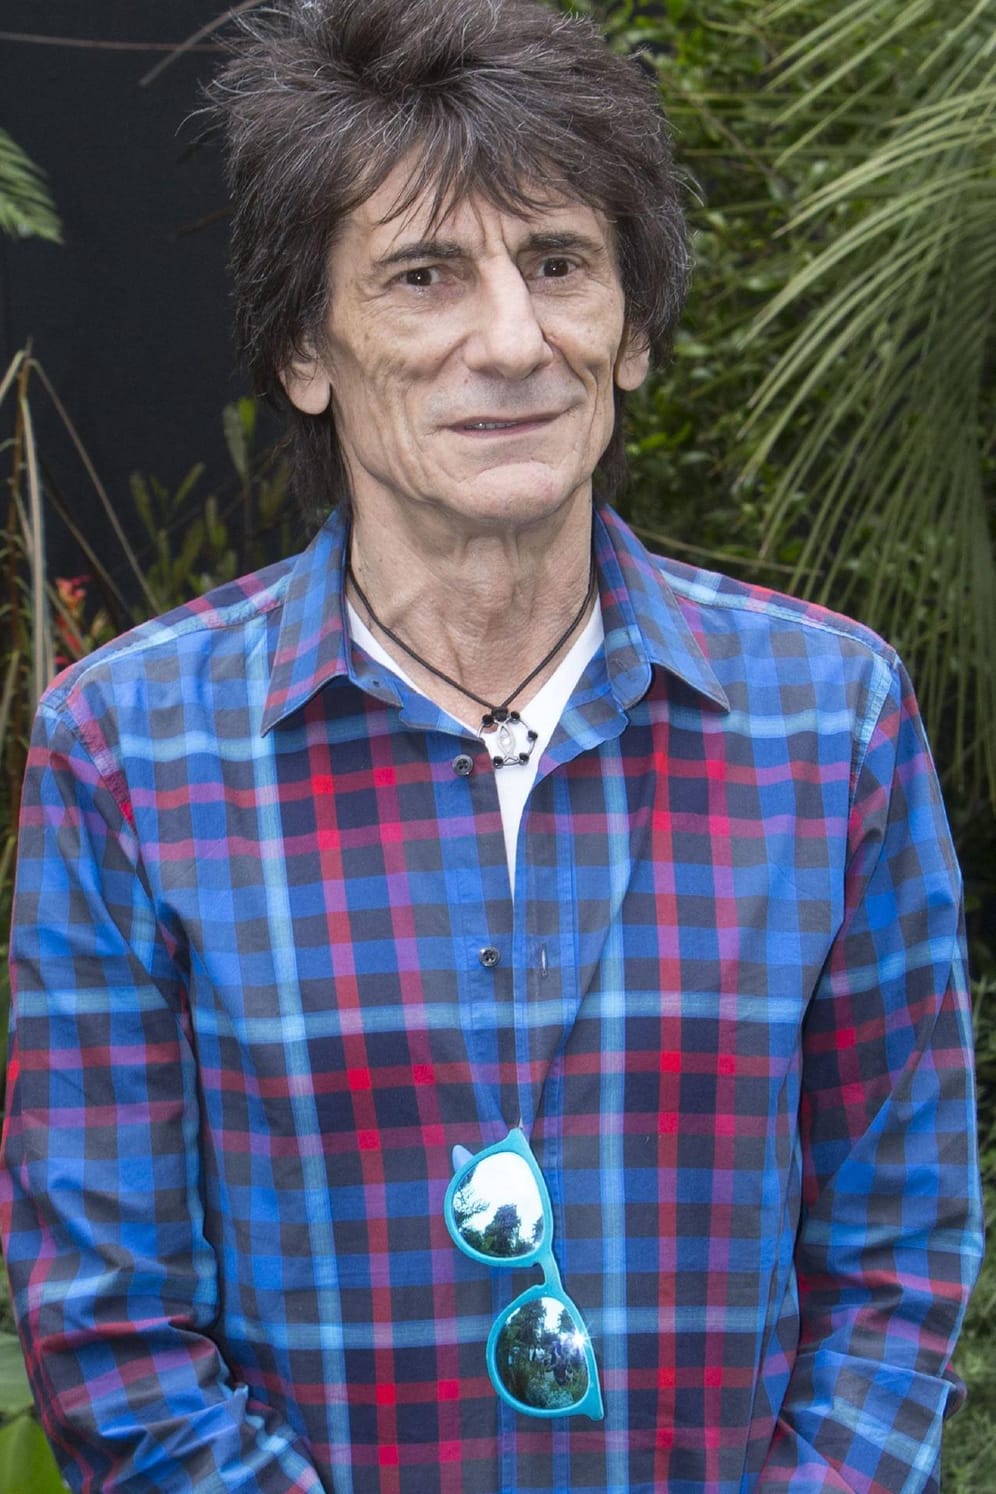 Ron Wood: Mick Jaggers Bandkollege hat ebenfalls fleißig an Nachwuchs gearbeitet. Der Rolling-Stones-Gitarrist hat sechs Kinder. Darunter Zwillinge, die im Mai 2016 zur Welt kamen.